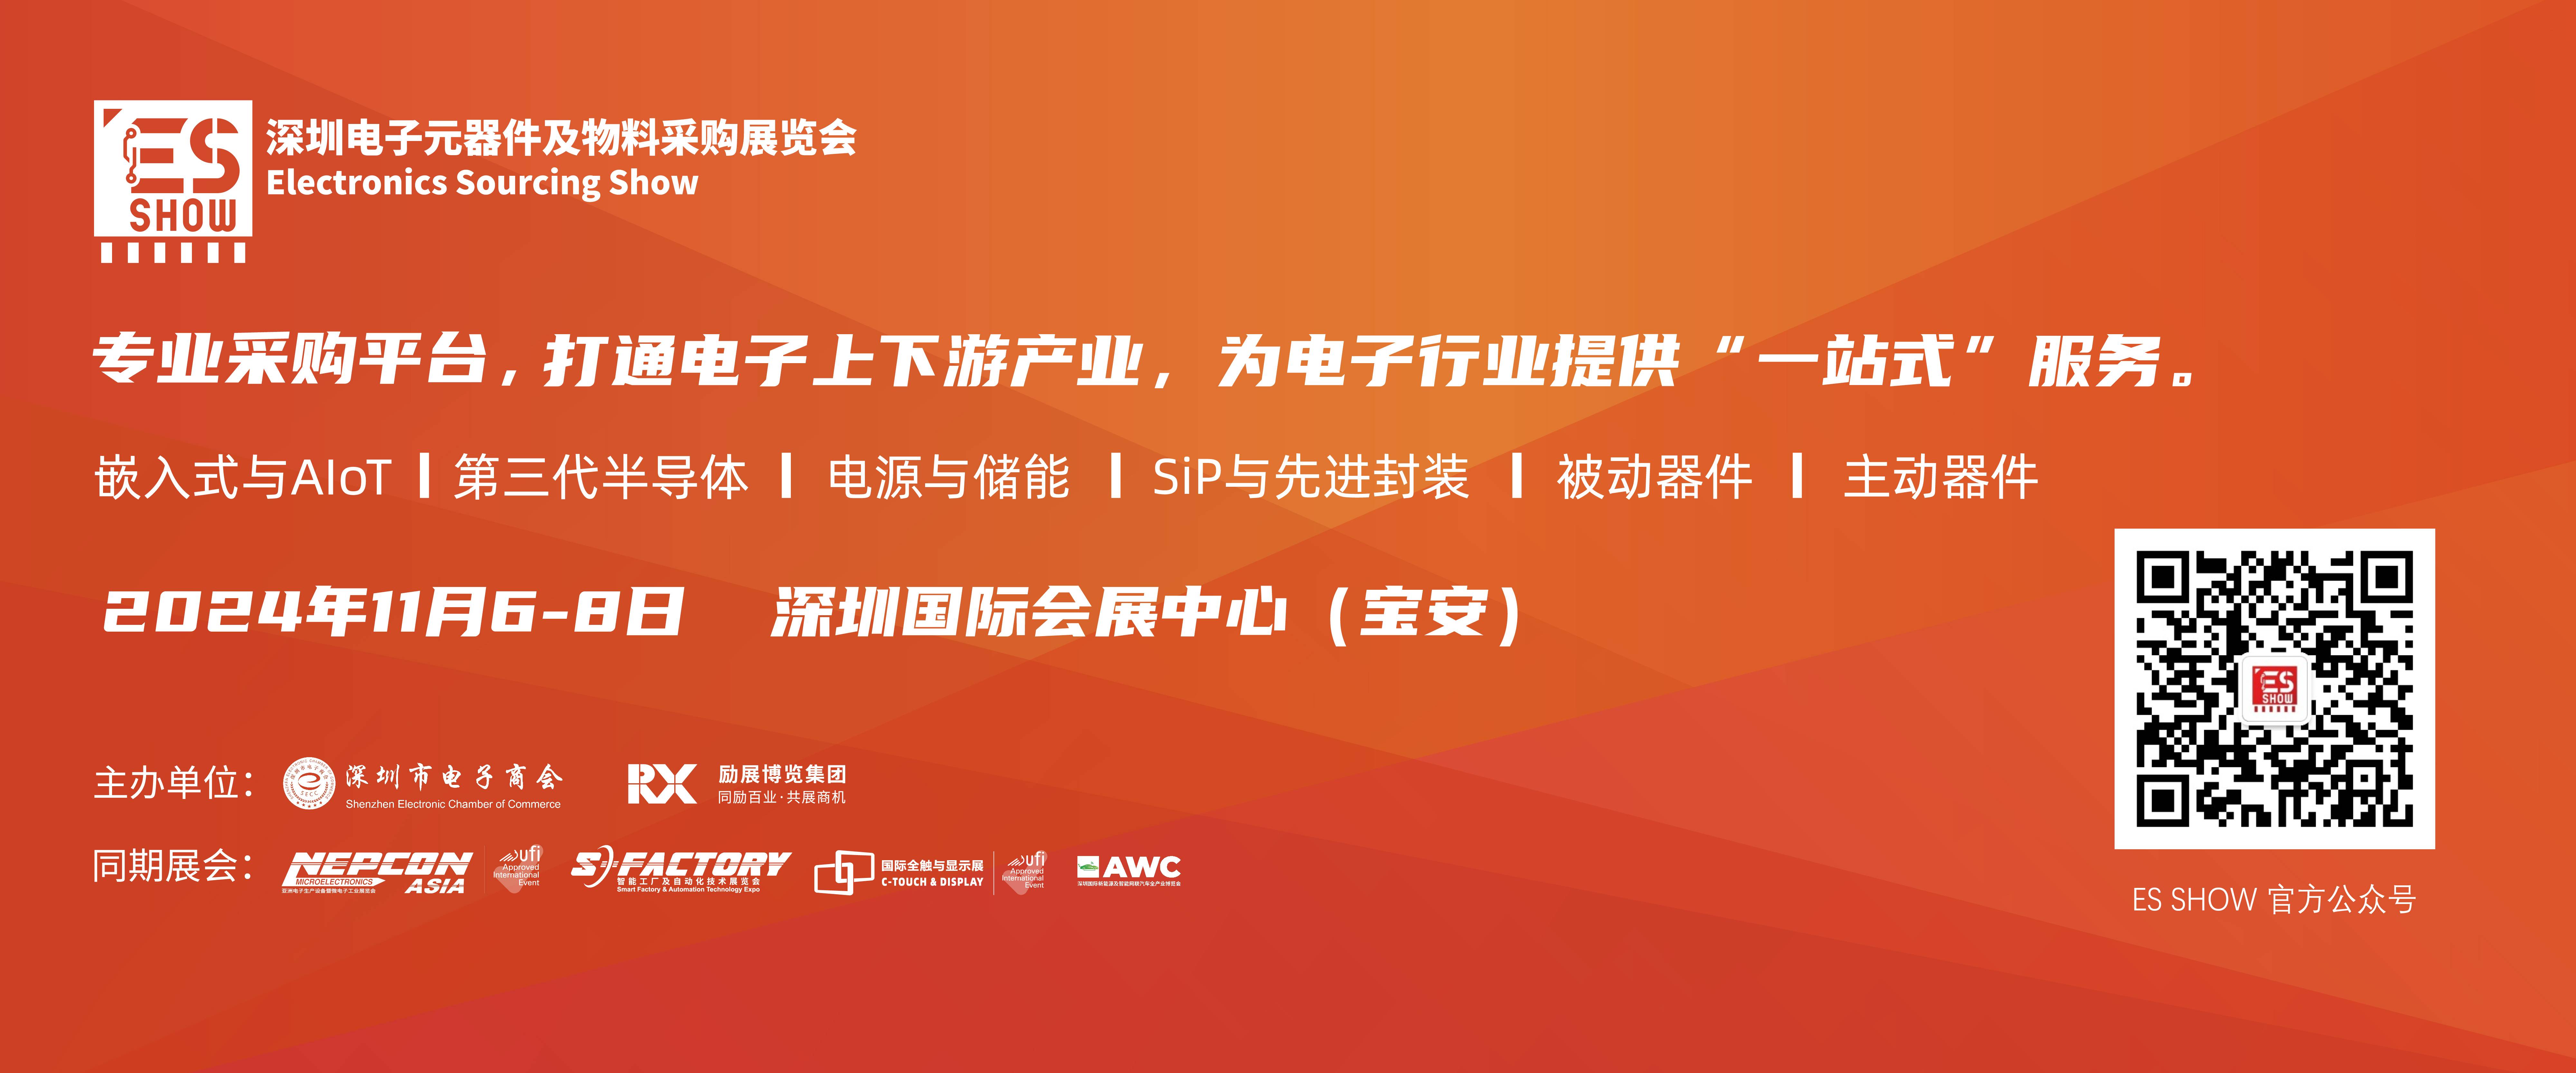 台积电 3nm 苹果 GPU 深圳电子展 中国电子展 元器件展会